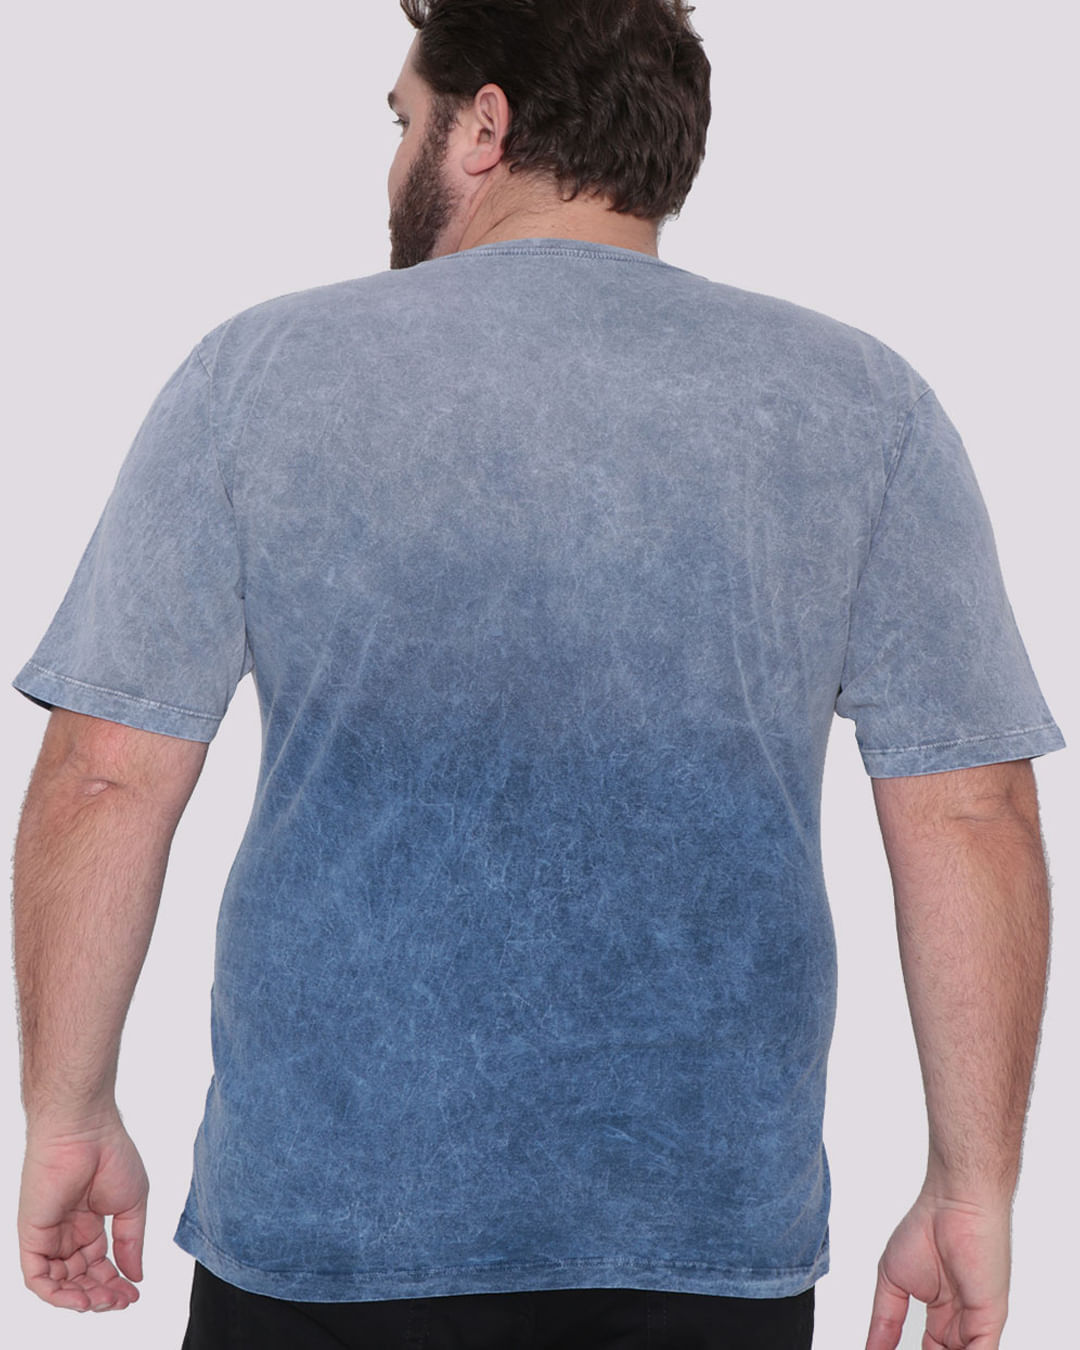 Camiseta-Plus-Size-Masculina-Estonada-Dip-Dye-Azul